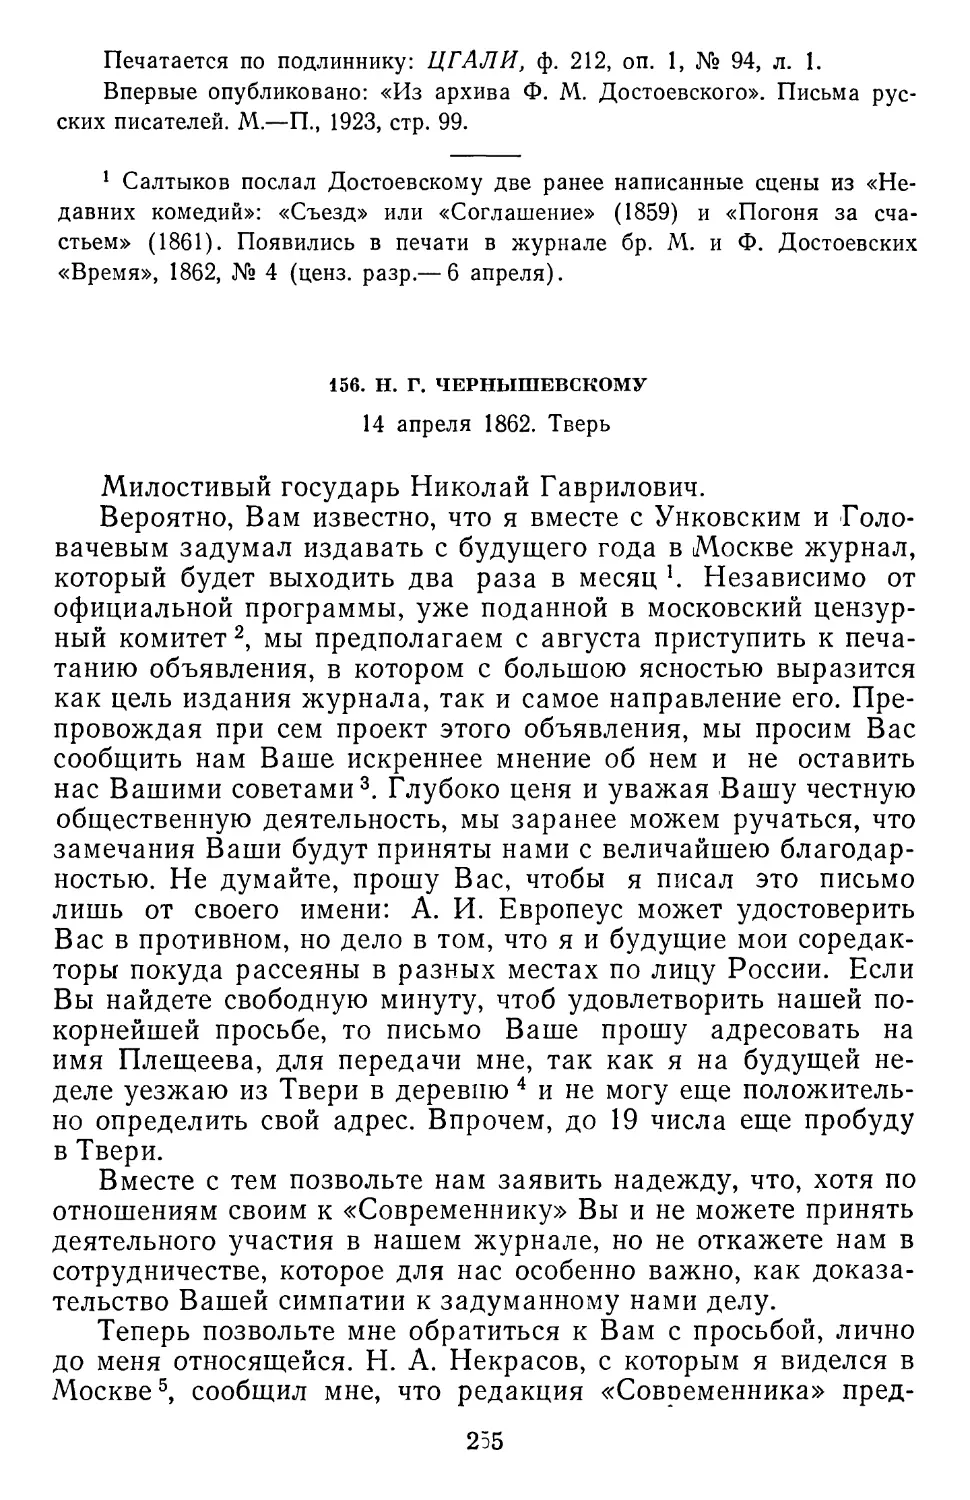 156.Н.Г. Чернышевскому. 14 апреля 1862. Тверь